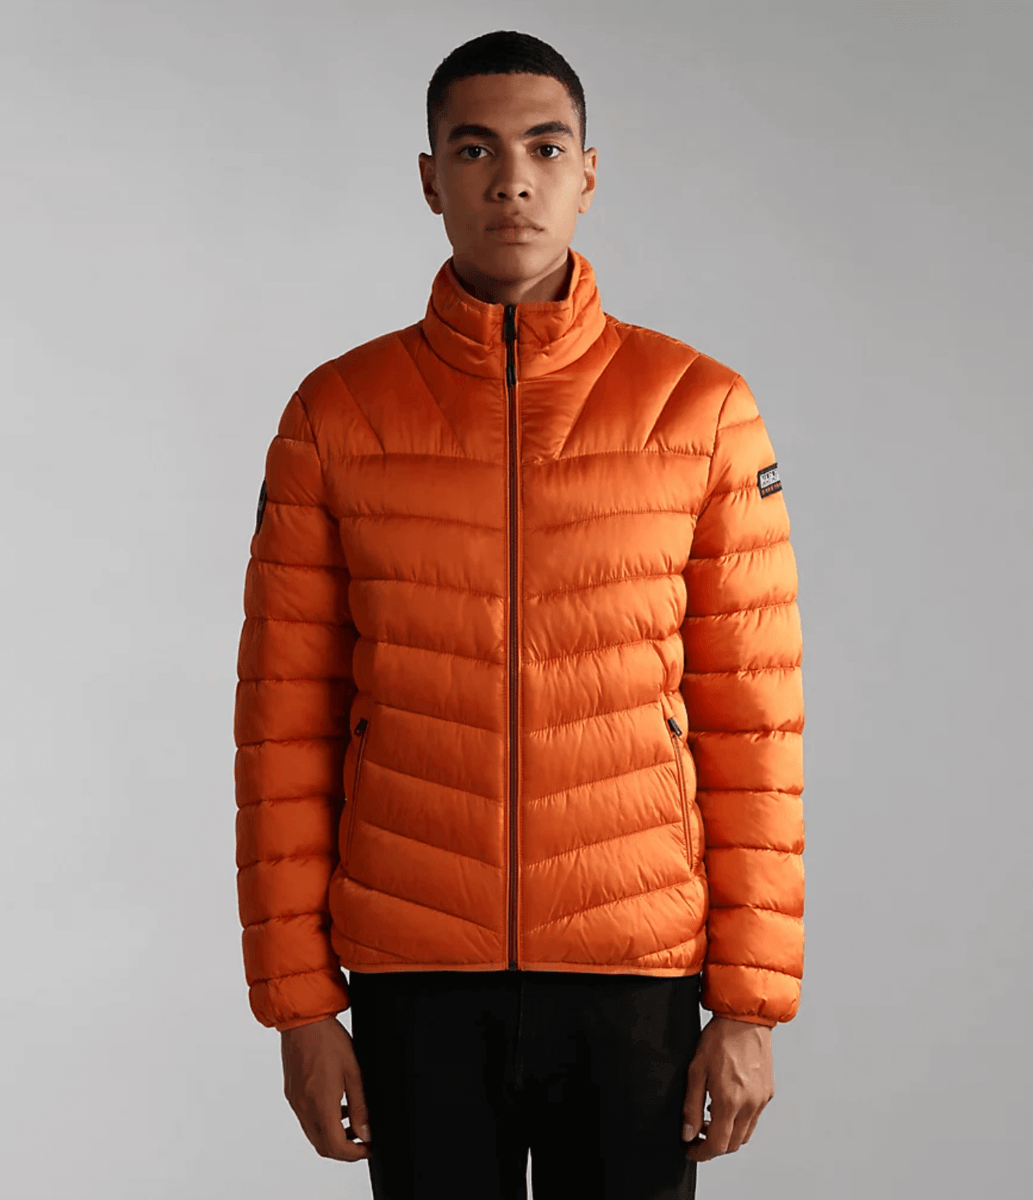 Napapijri Aerons 3 Jacket - Napapijri - Jackets & Coats | CCW Clothing